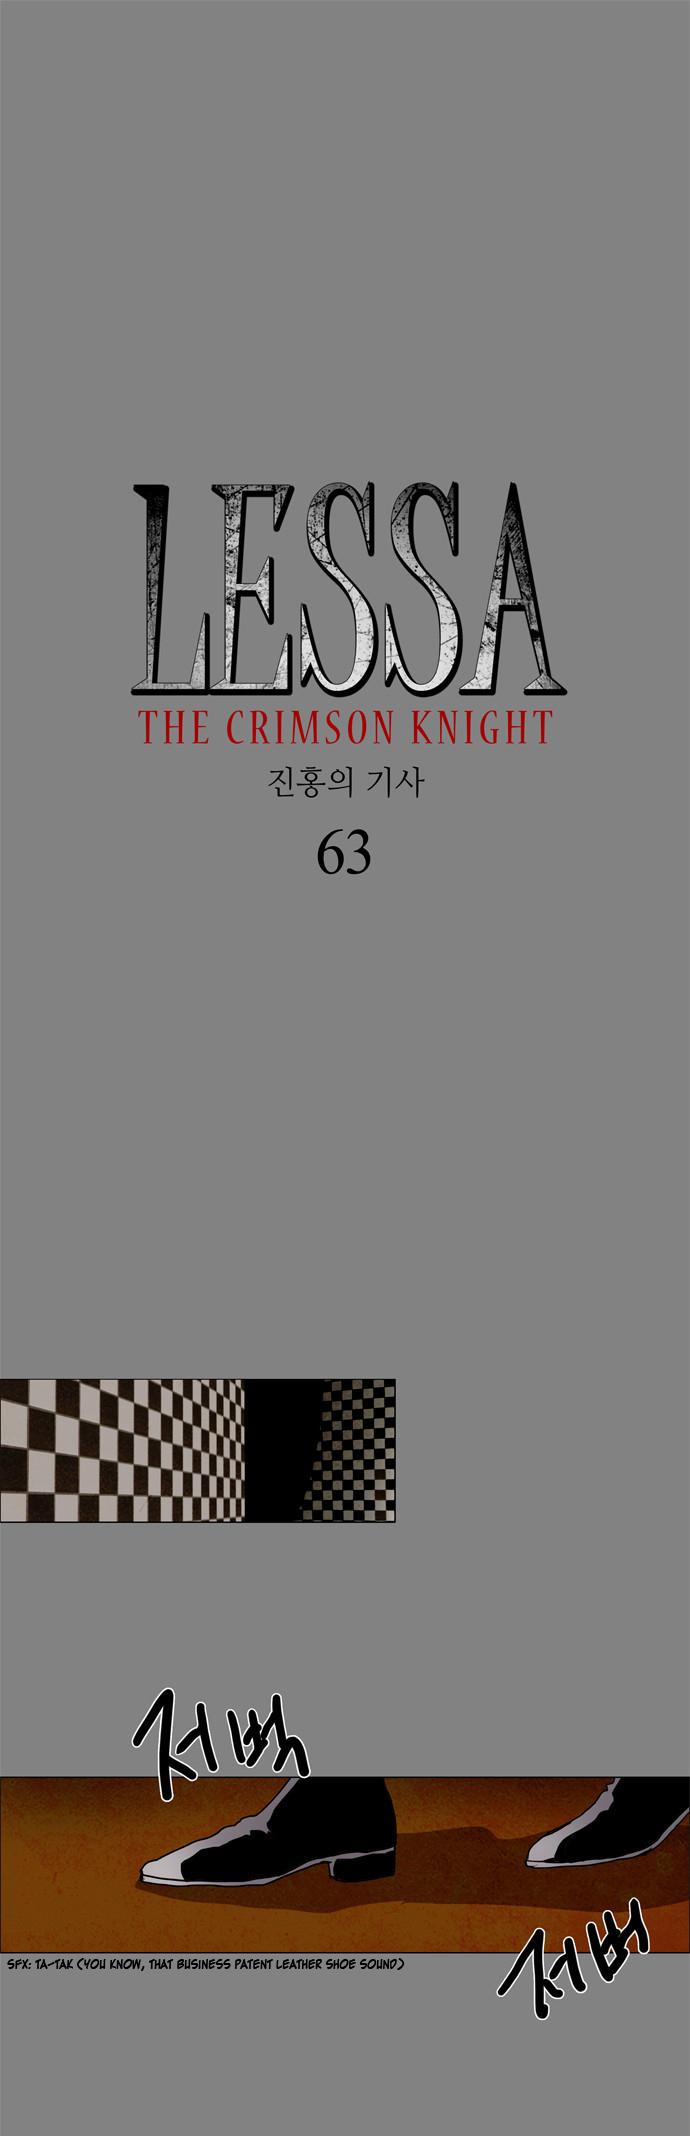 LESSA - The Crimson Knight Vol.1 Ch.63